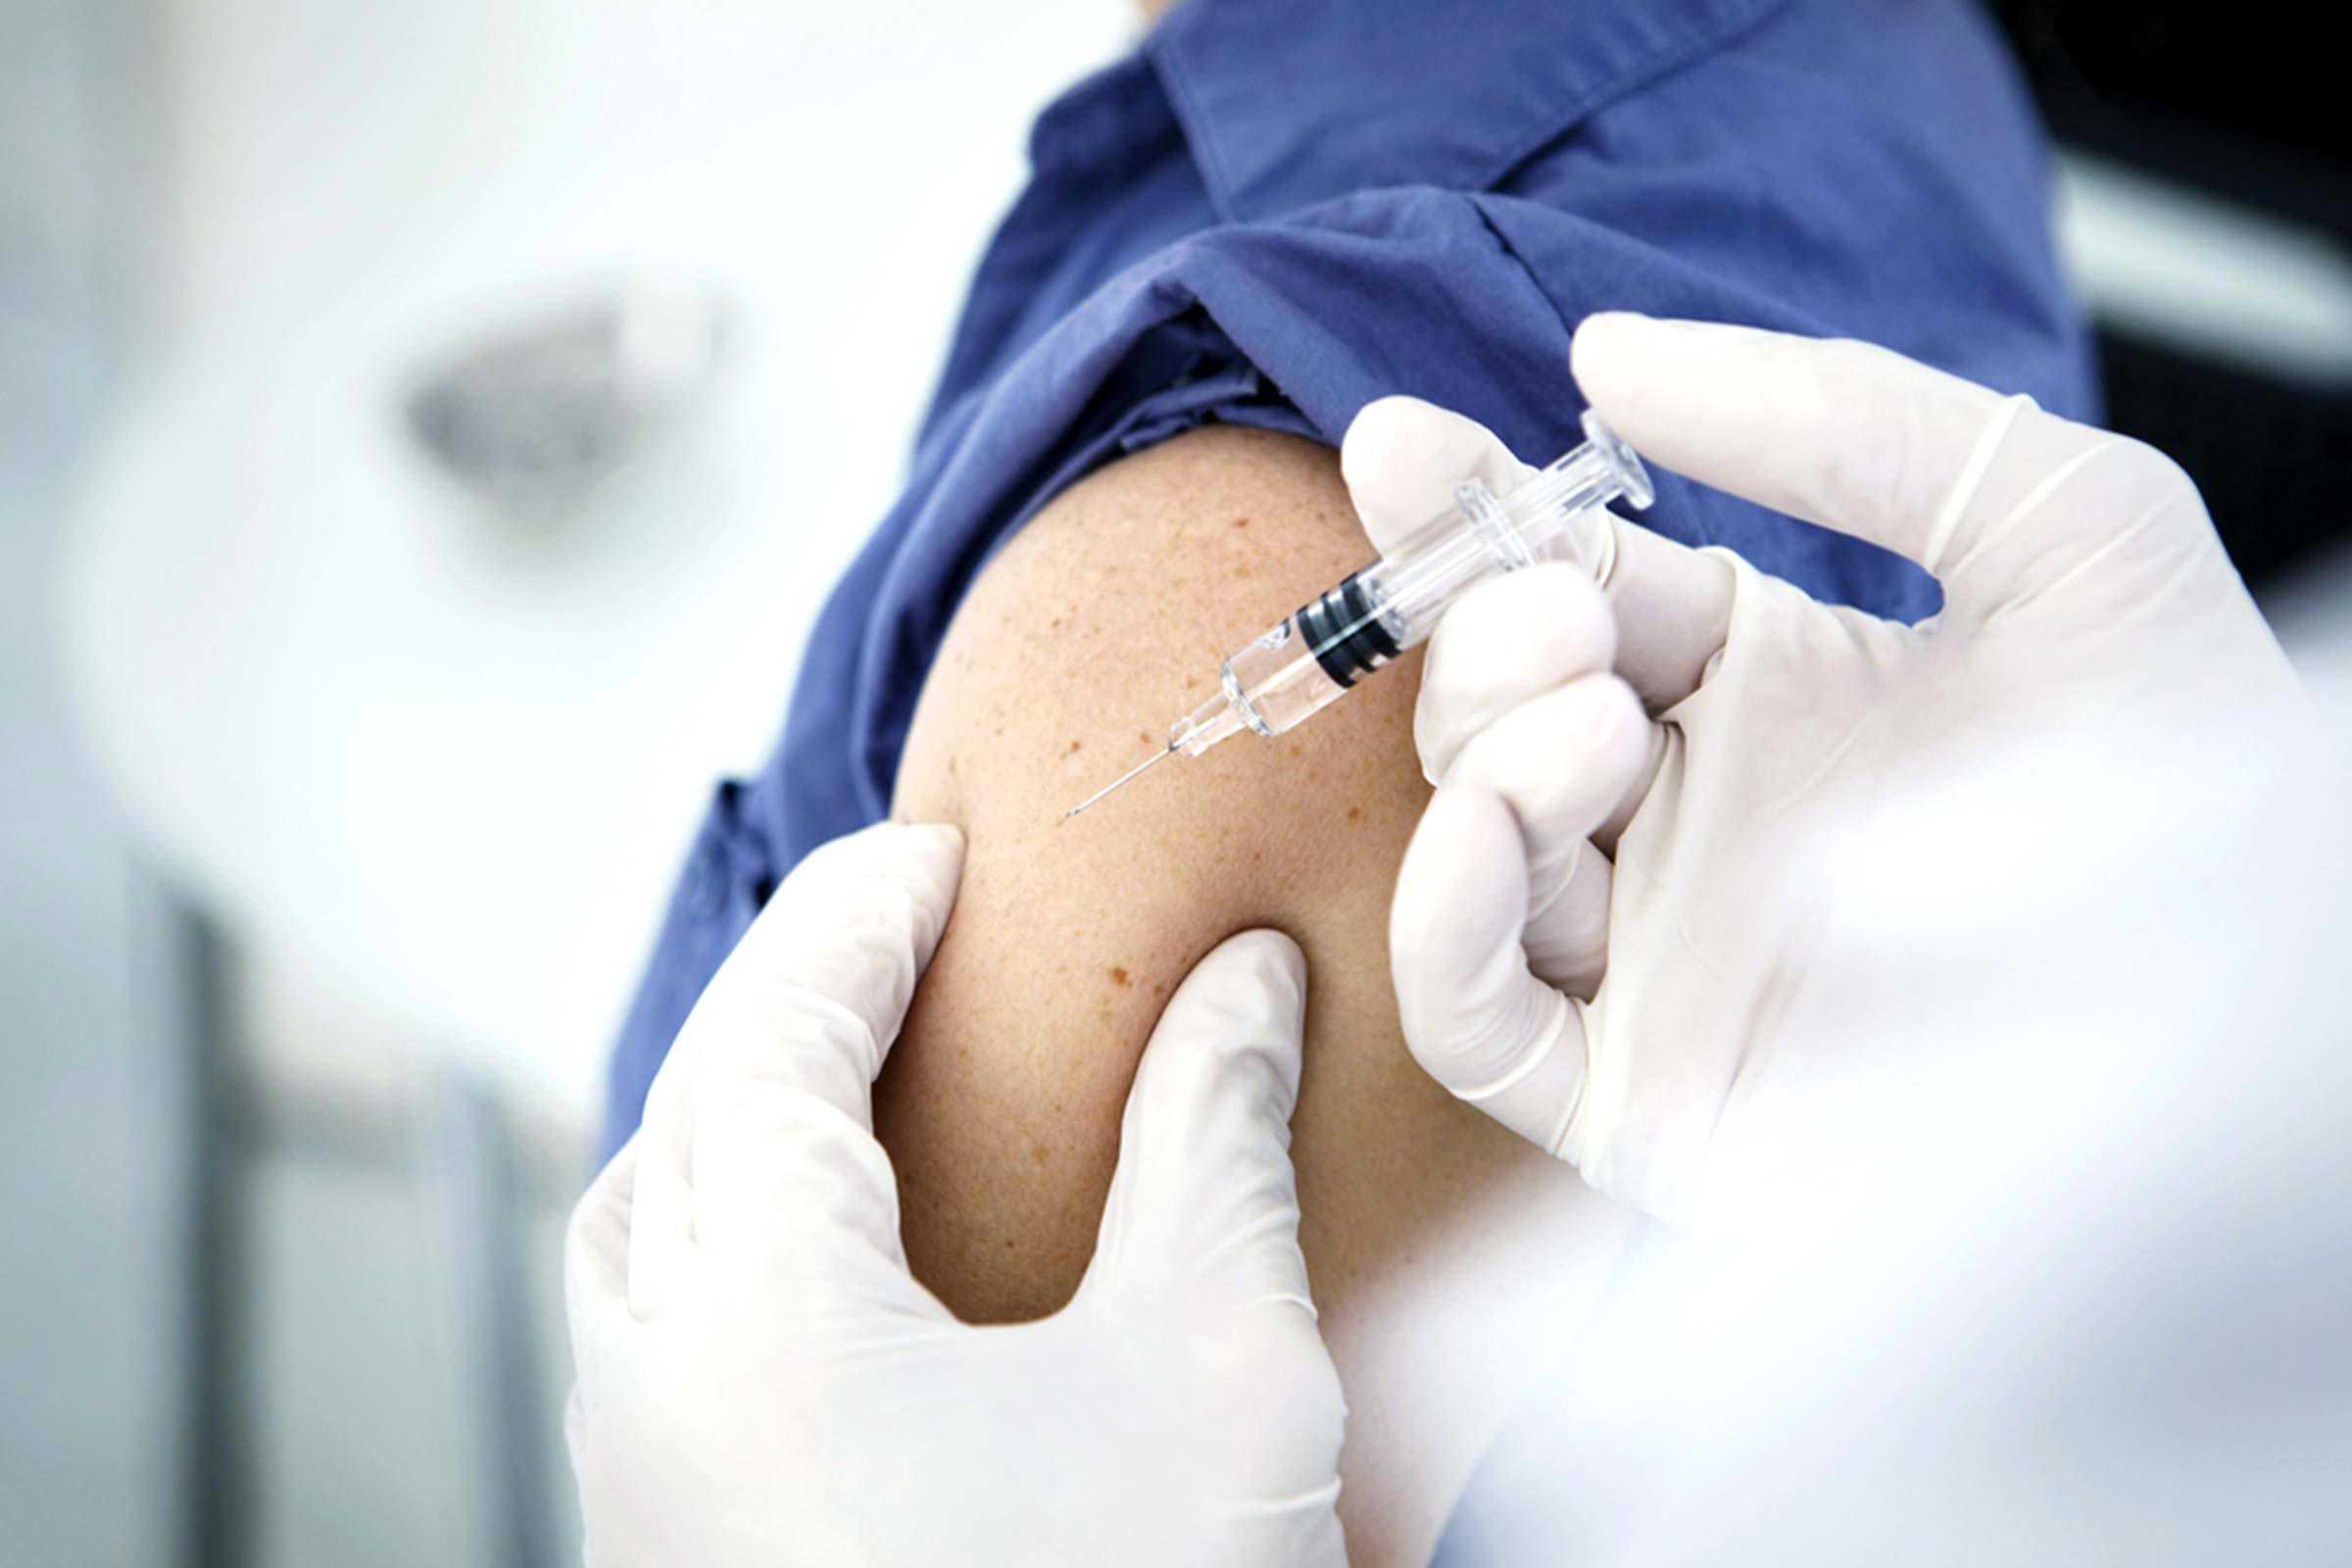 Kiedy pojawi się szczepionka przeciwko SARS-CoV-2? Ekspert: niewielkie szanse na szybkie opracowanie